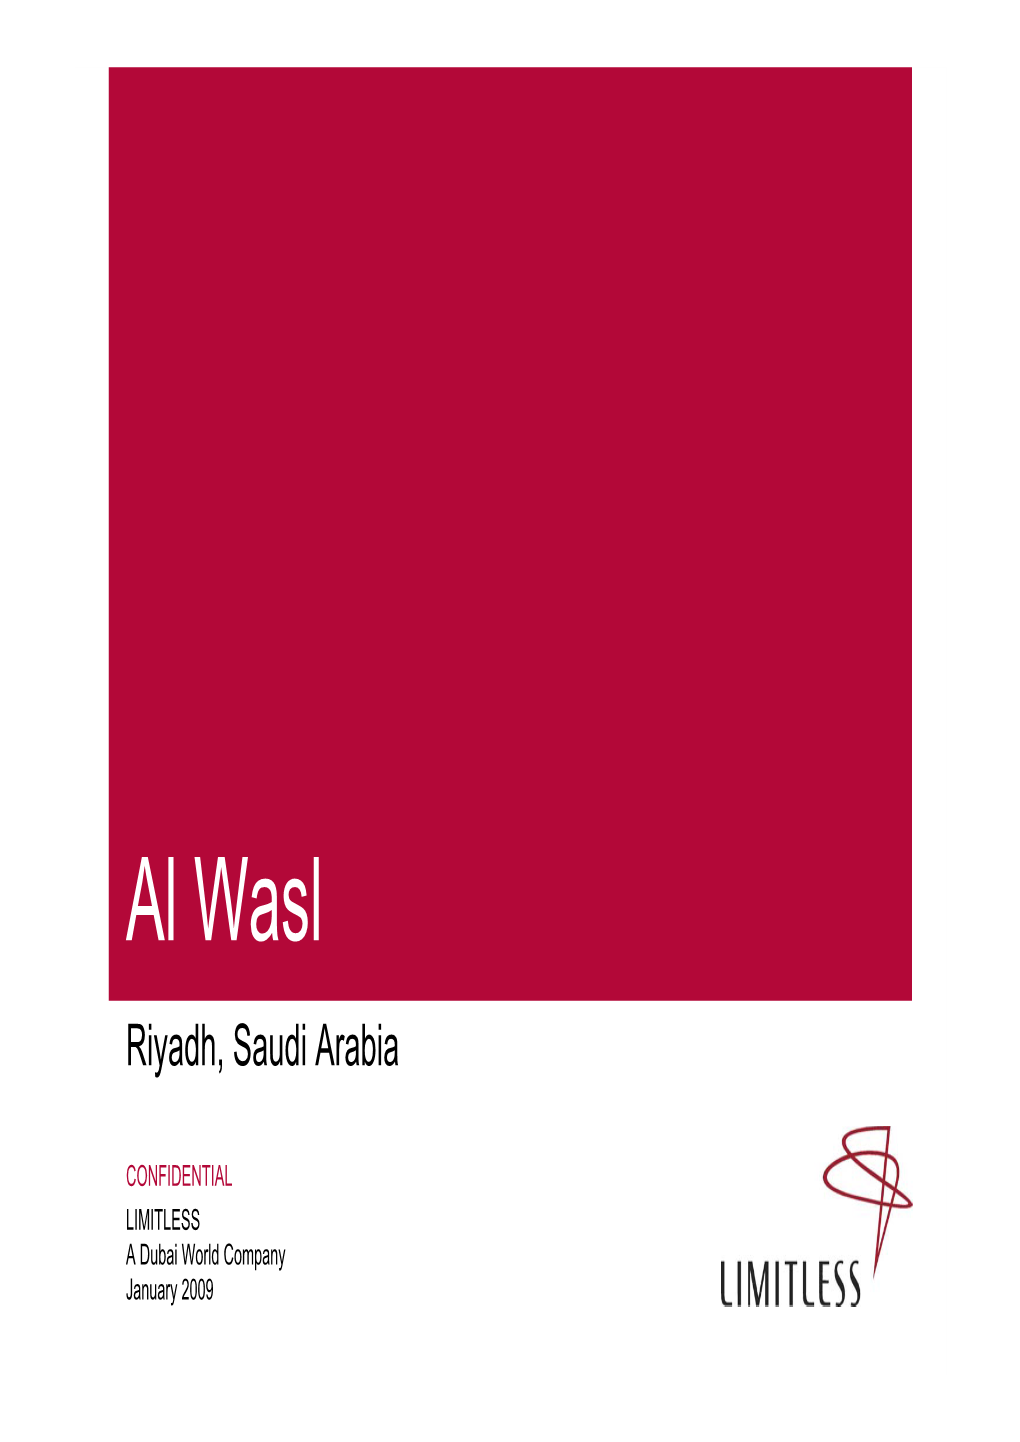 Al Wasl Riyadh, Saudi Arabia